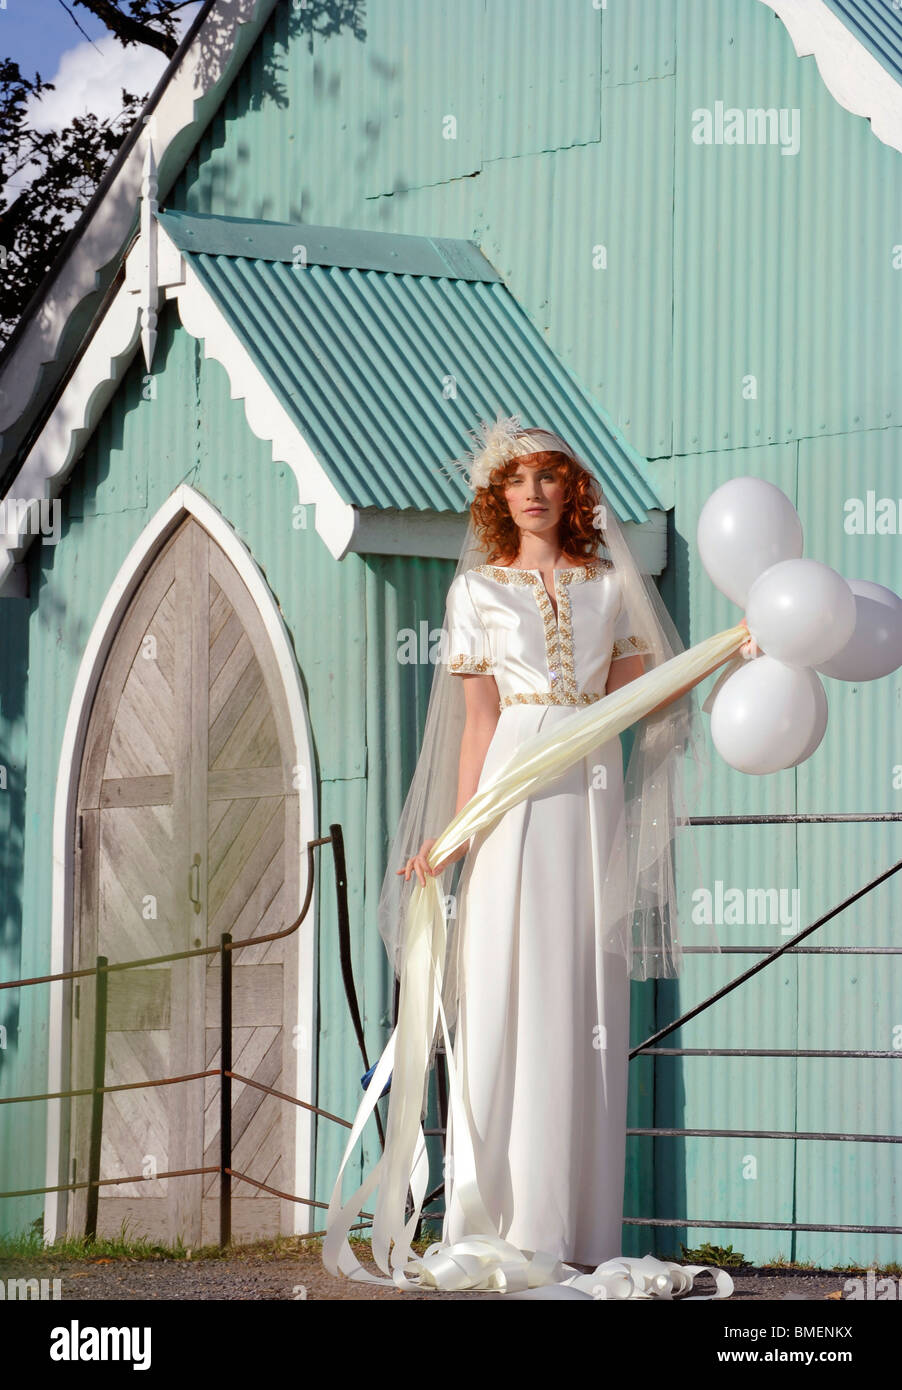 Ein Modell posiert in einem Brautkleid von Designerin Lisa Redman erstellt. Stockfoto